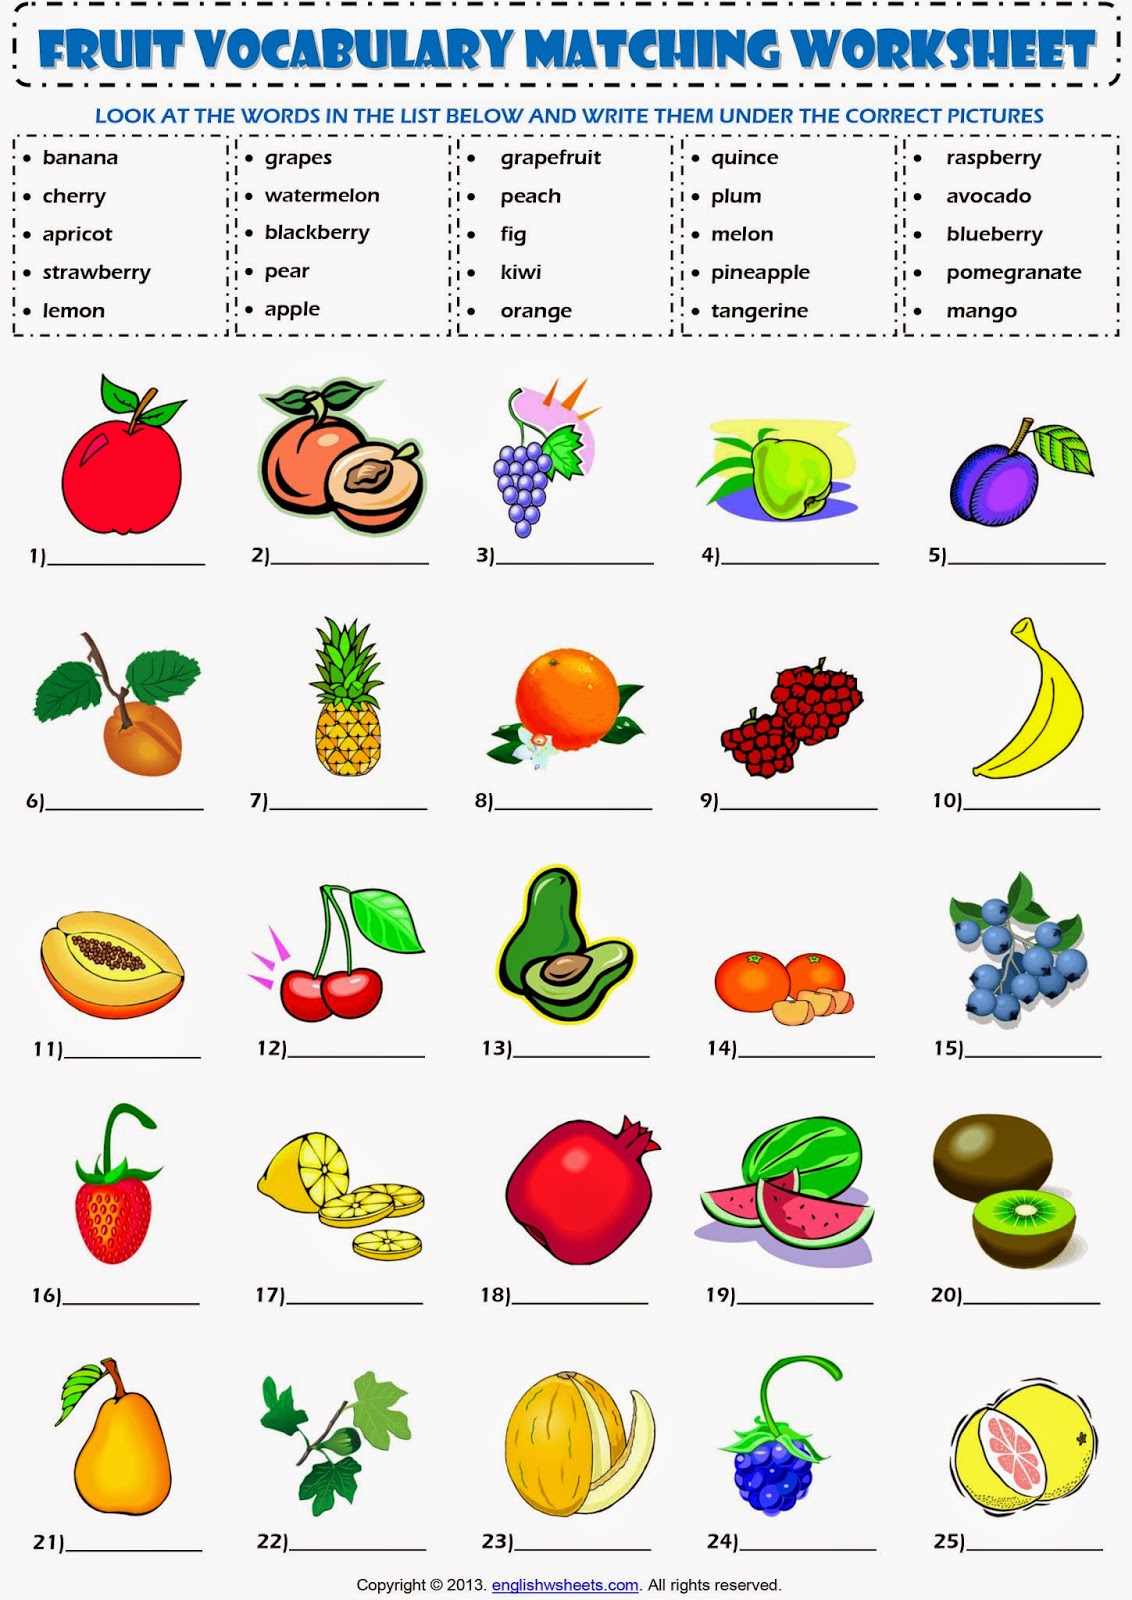 Vegetable exercises. Fruits and Vegetables exercises for Kids. Фрукты на английском для детей задания. Упражнения на фрукты на английском языке для детей. Овощи на английском языке для детей задания.